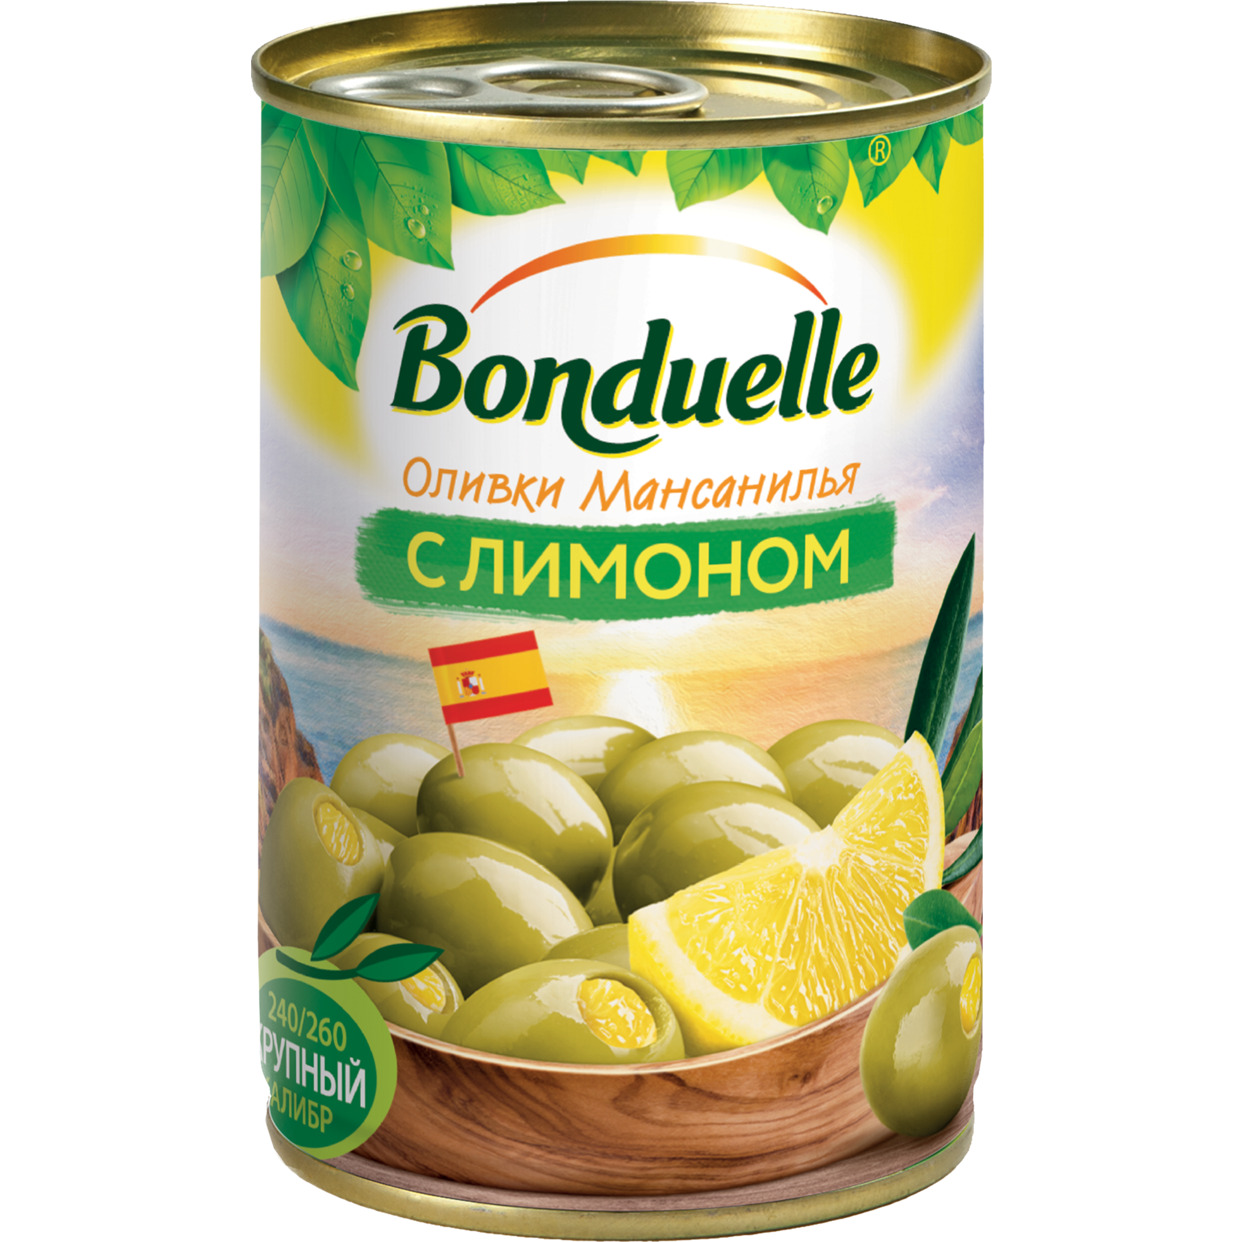 Оливки Bonduelle Мансанилья с лимоном 314 мл по акции в Пятерочке